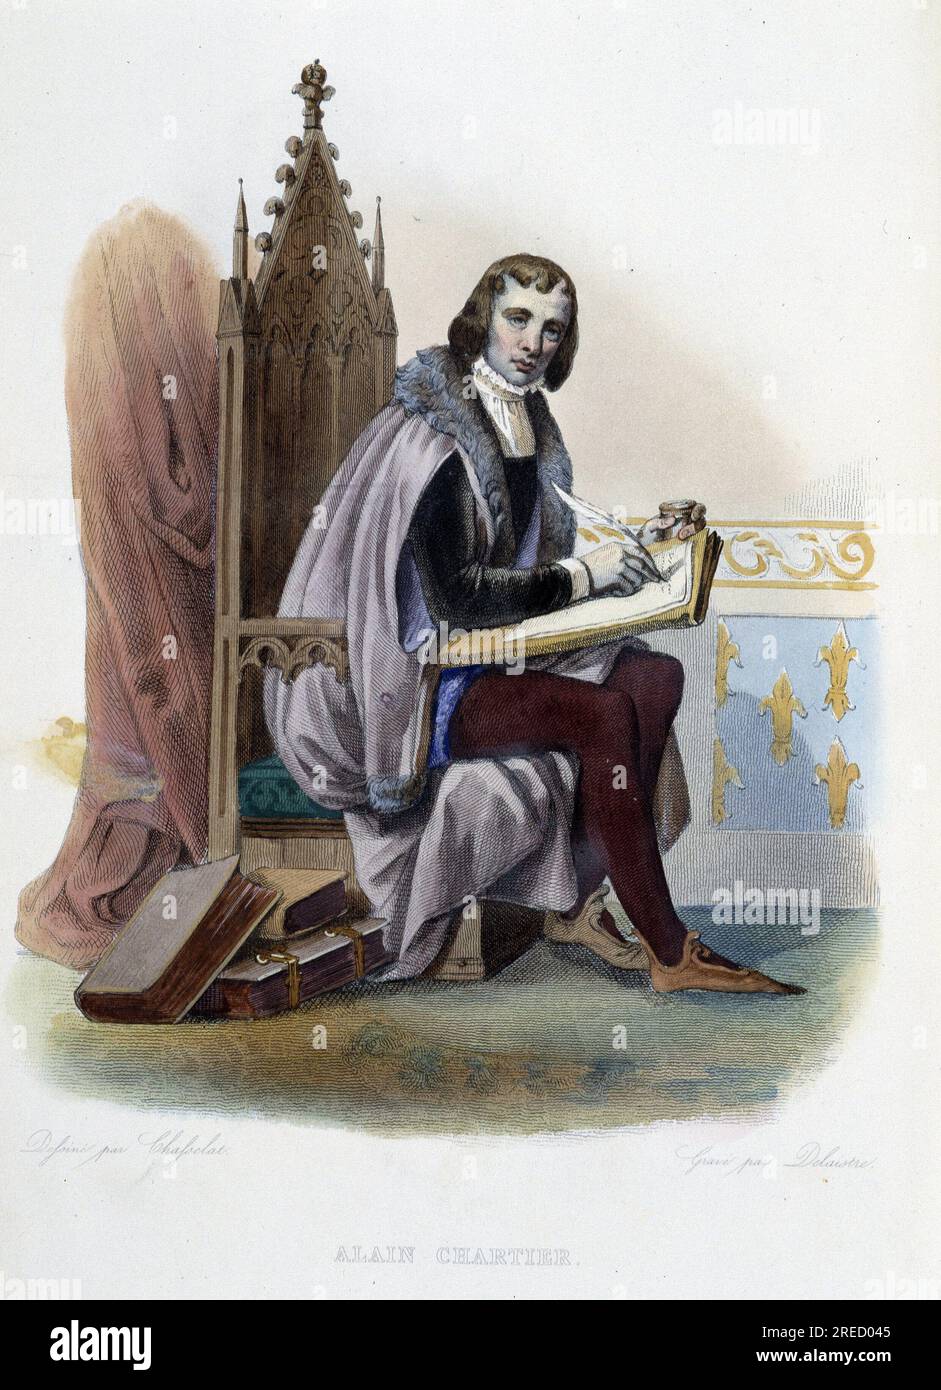 Alain Chartier (1385-1430) poete francais- in "Le Plutarque francais", par Mennechet, Paris, 1844-47 Stock Photo